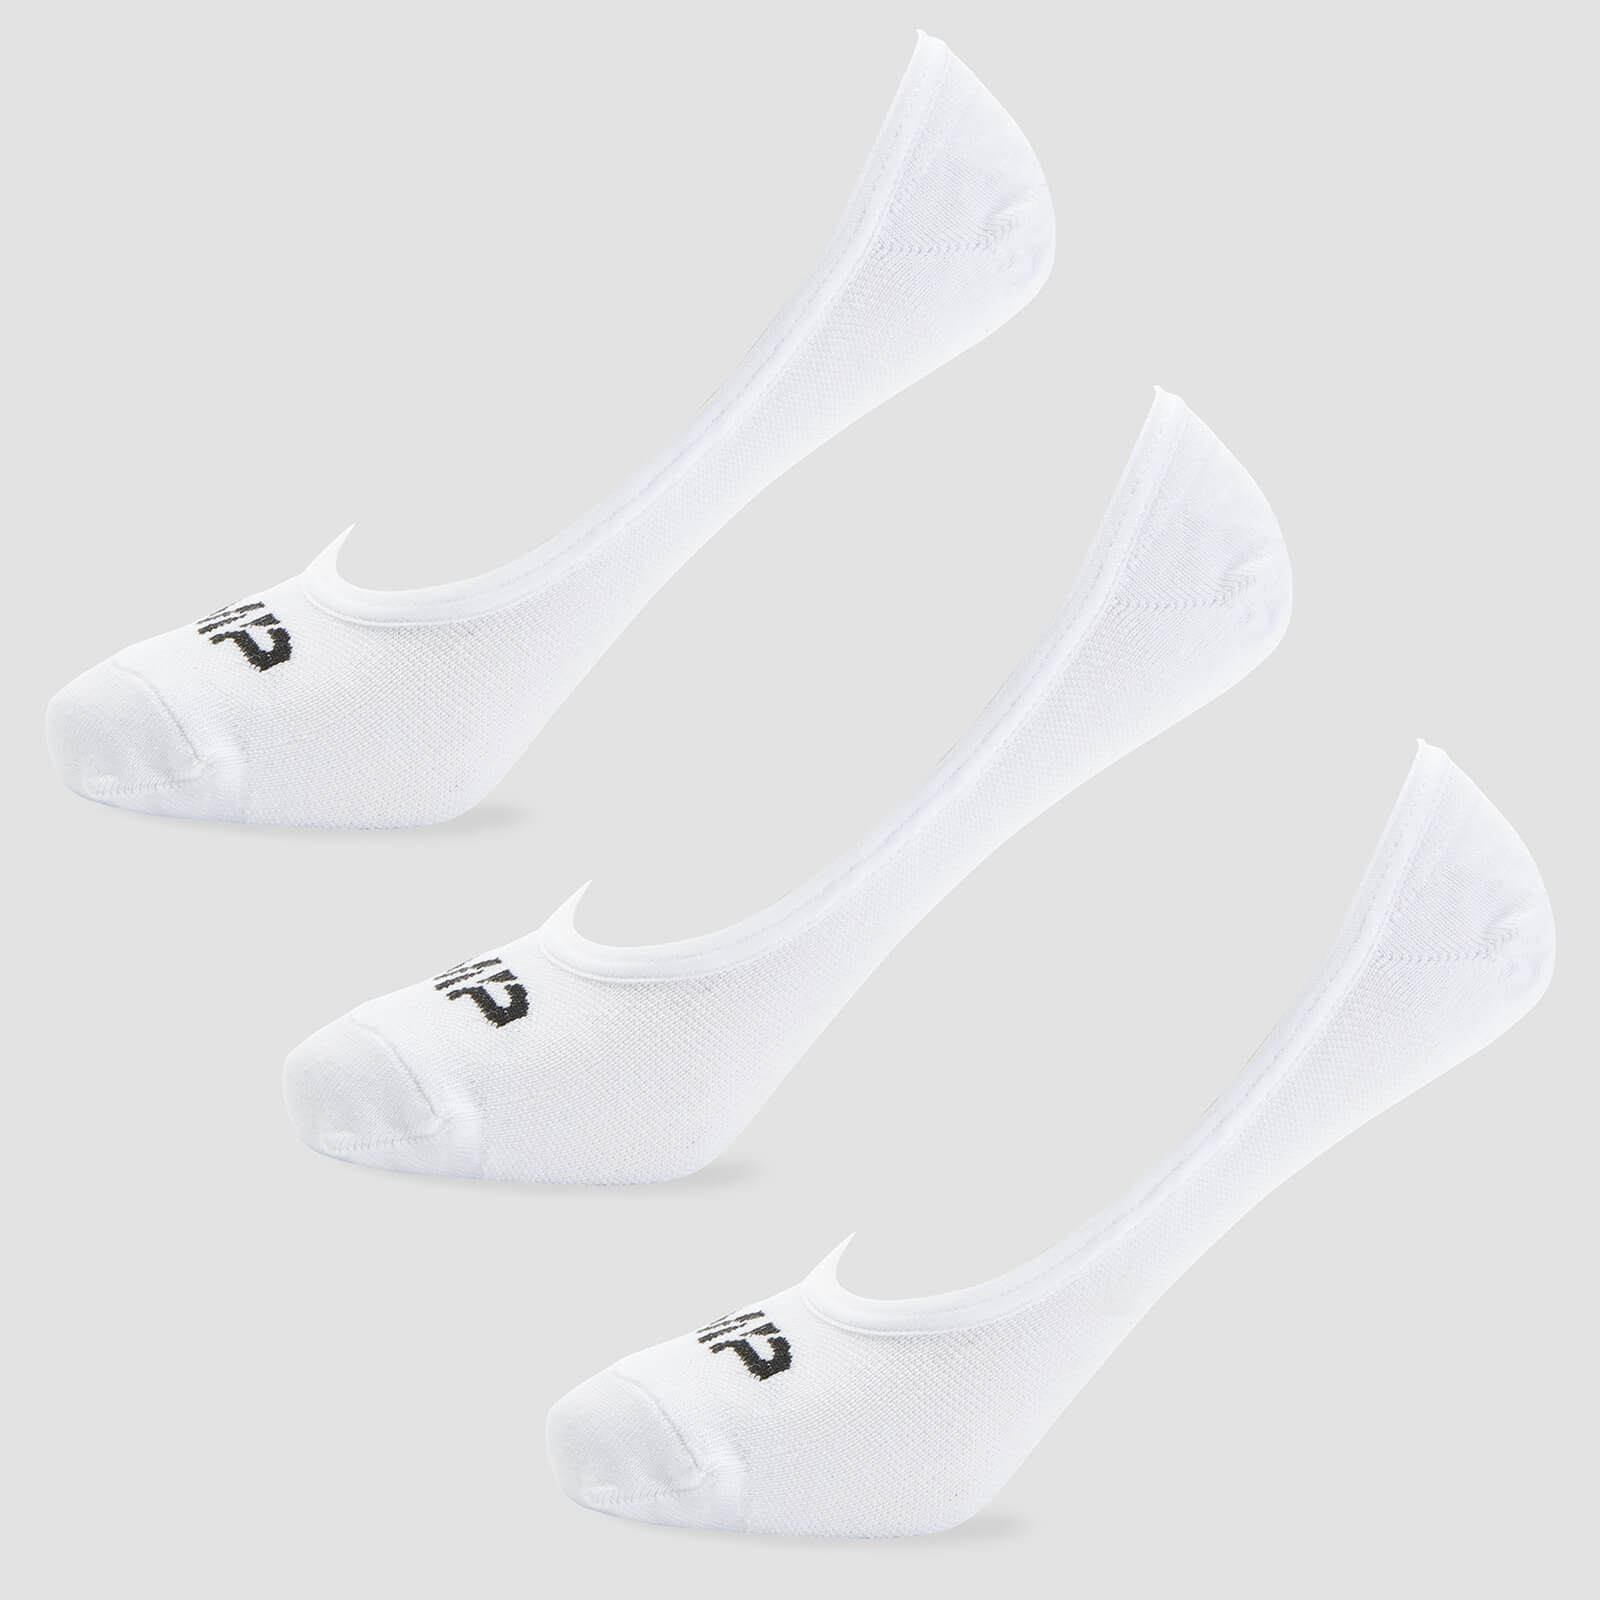 Muške nevidljive čarape - Bijele (3 para) - UK 6-8